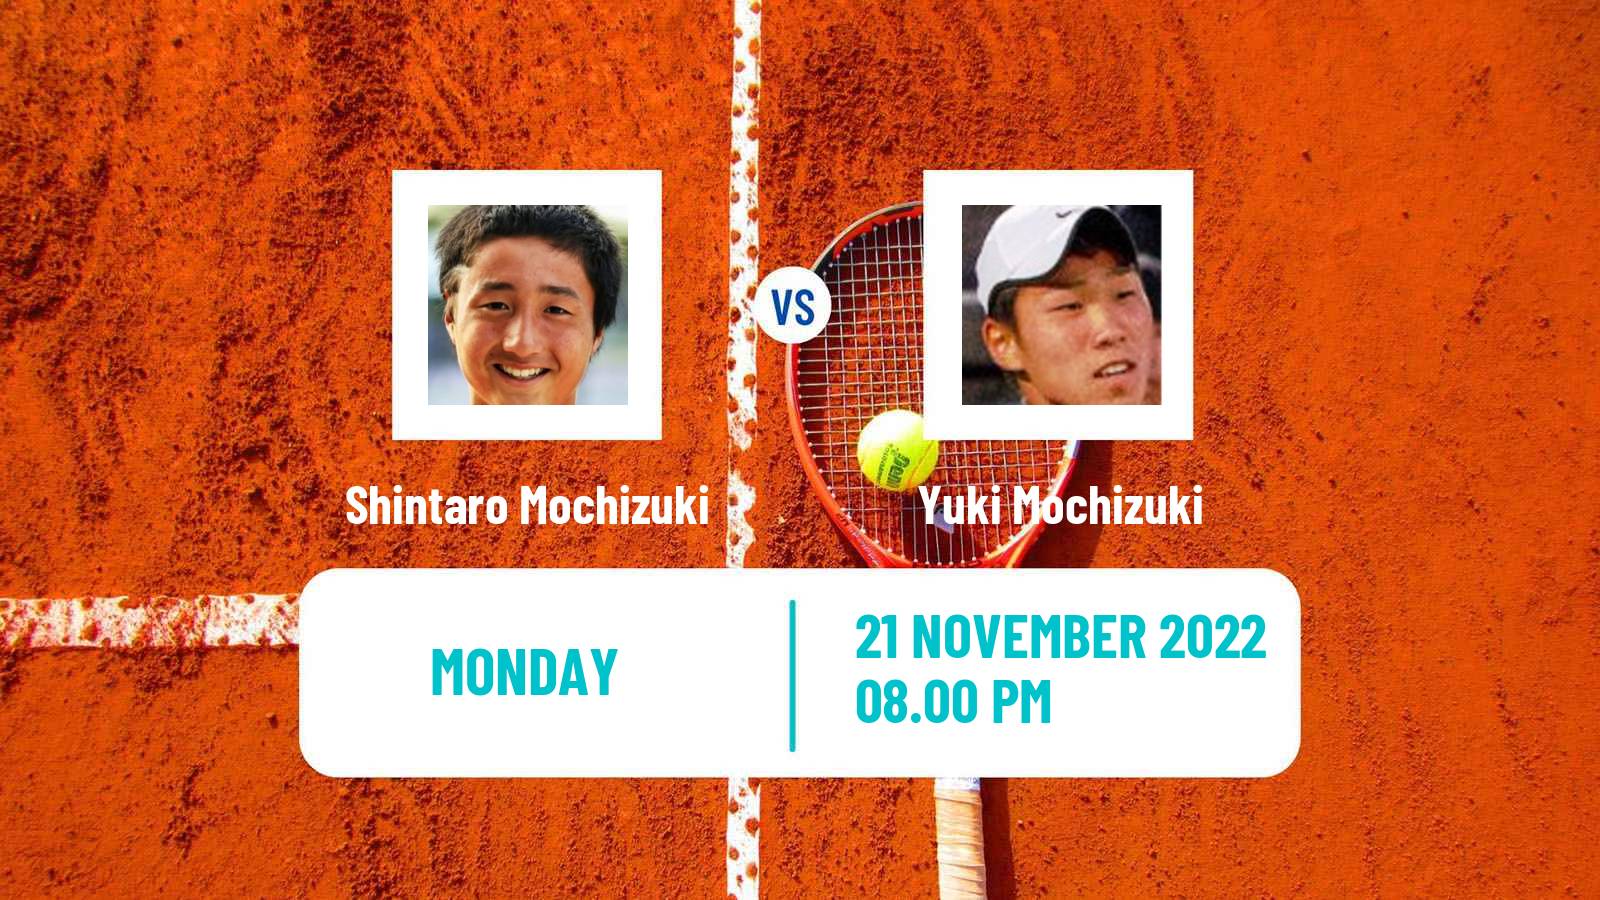 Tennis ATP Challenger Shintaro Mochizuki - Yuki Mochizuki